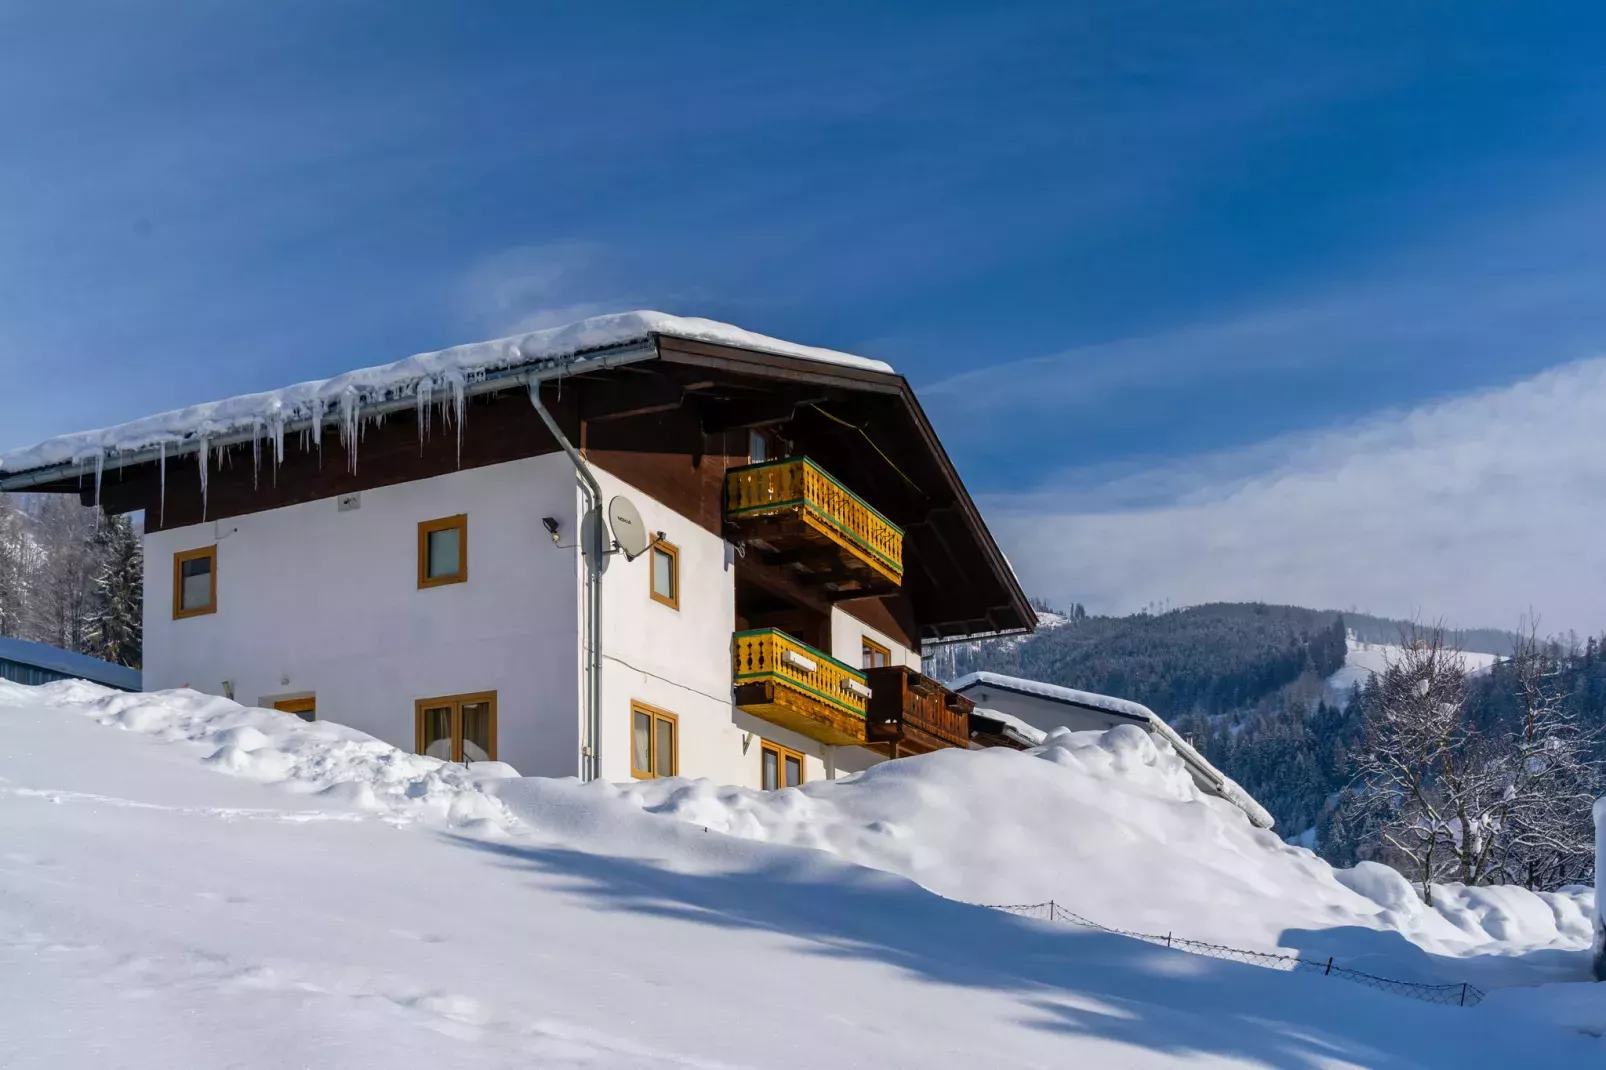 Huis onder sneeuw in de bergen, met bergen in de achtergrond